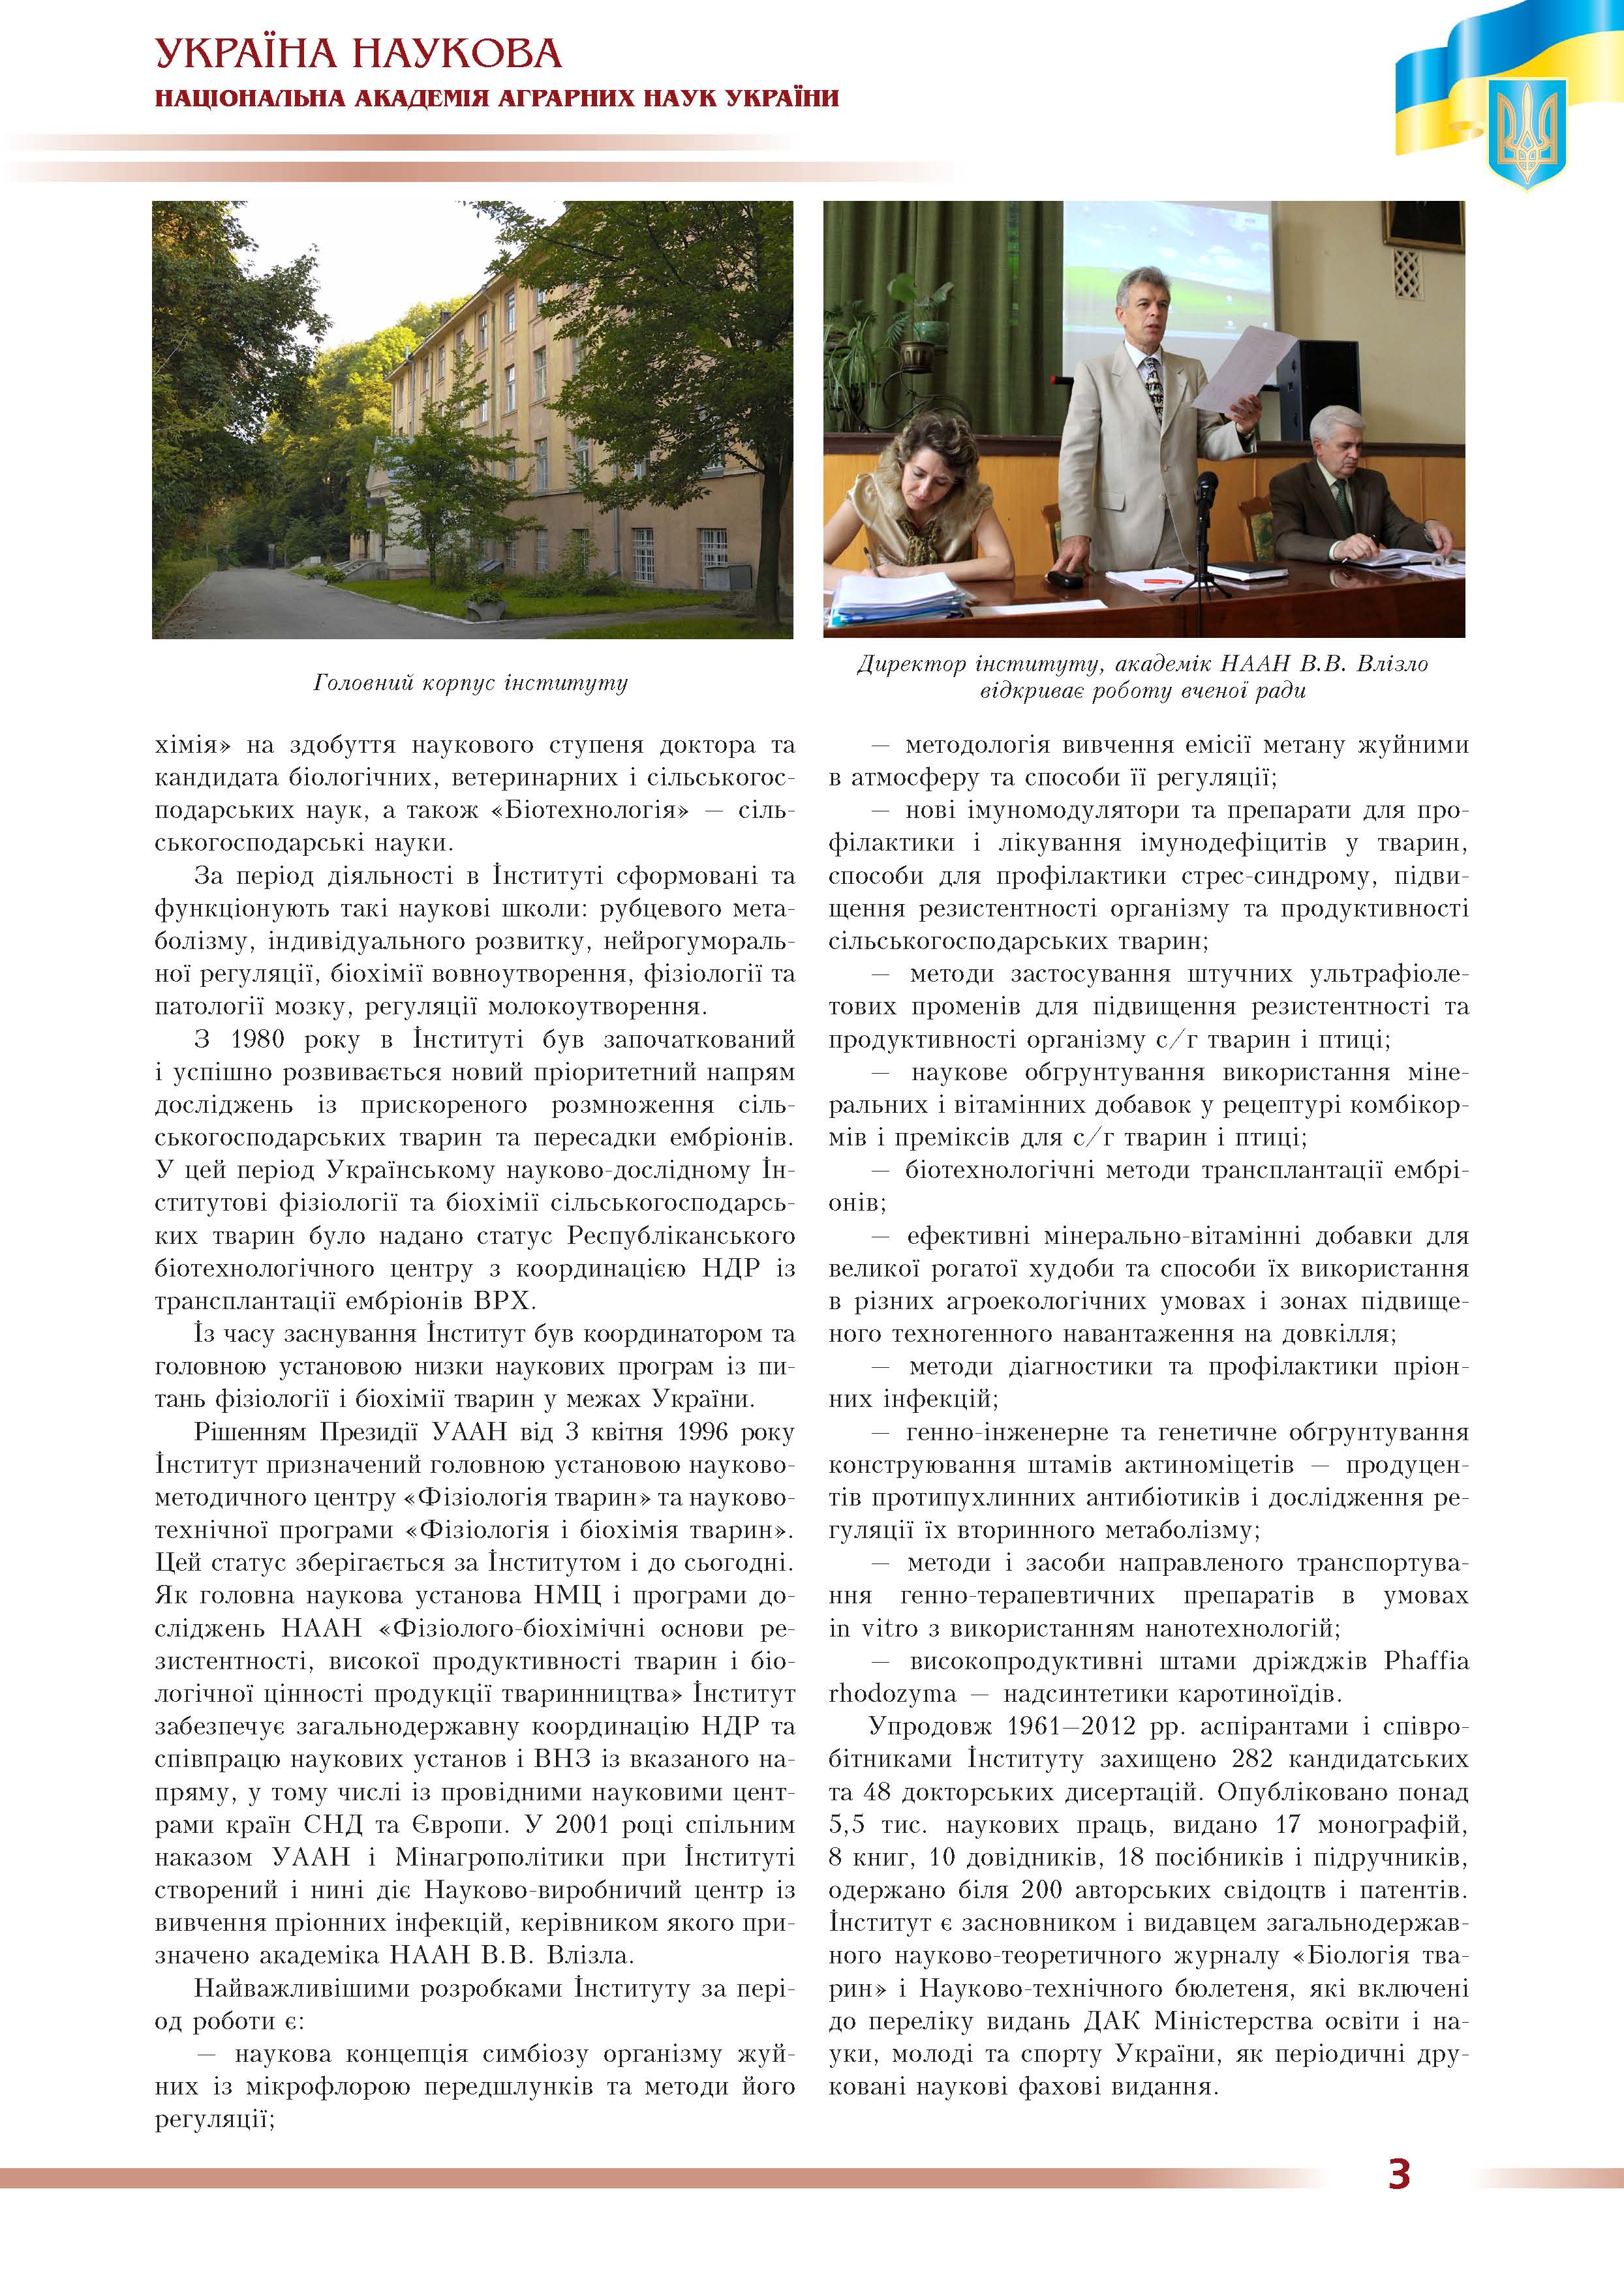 Інститут біології тварин Національної академії аграрних наук України 